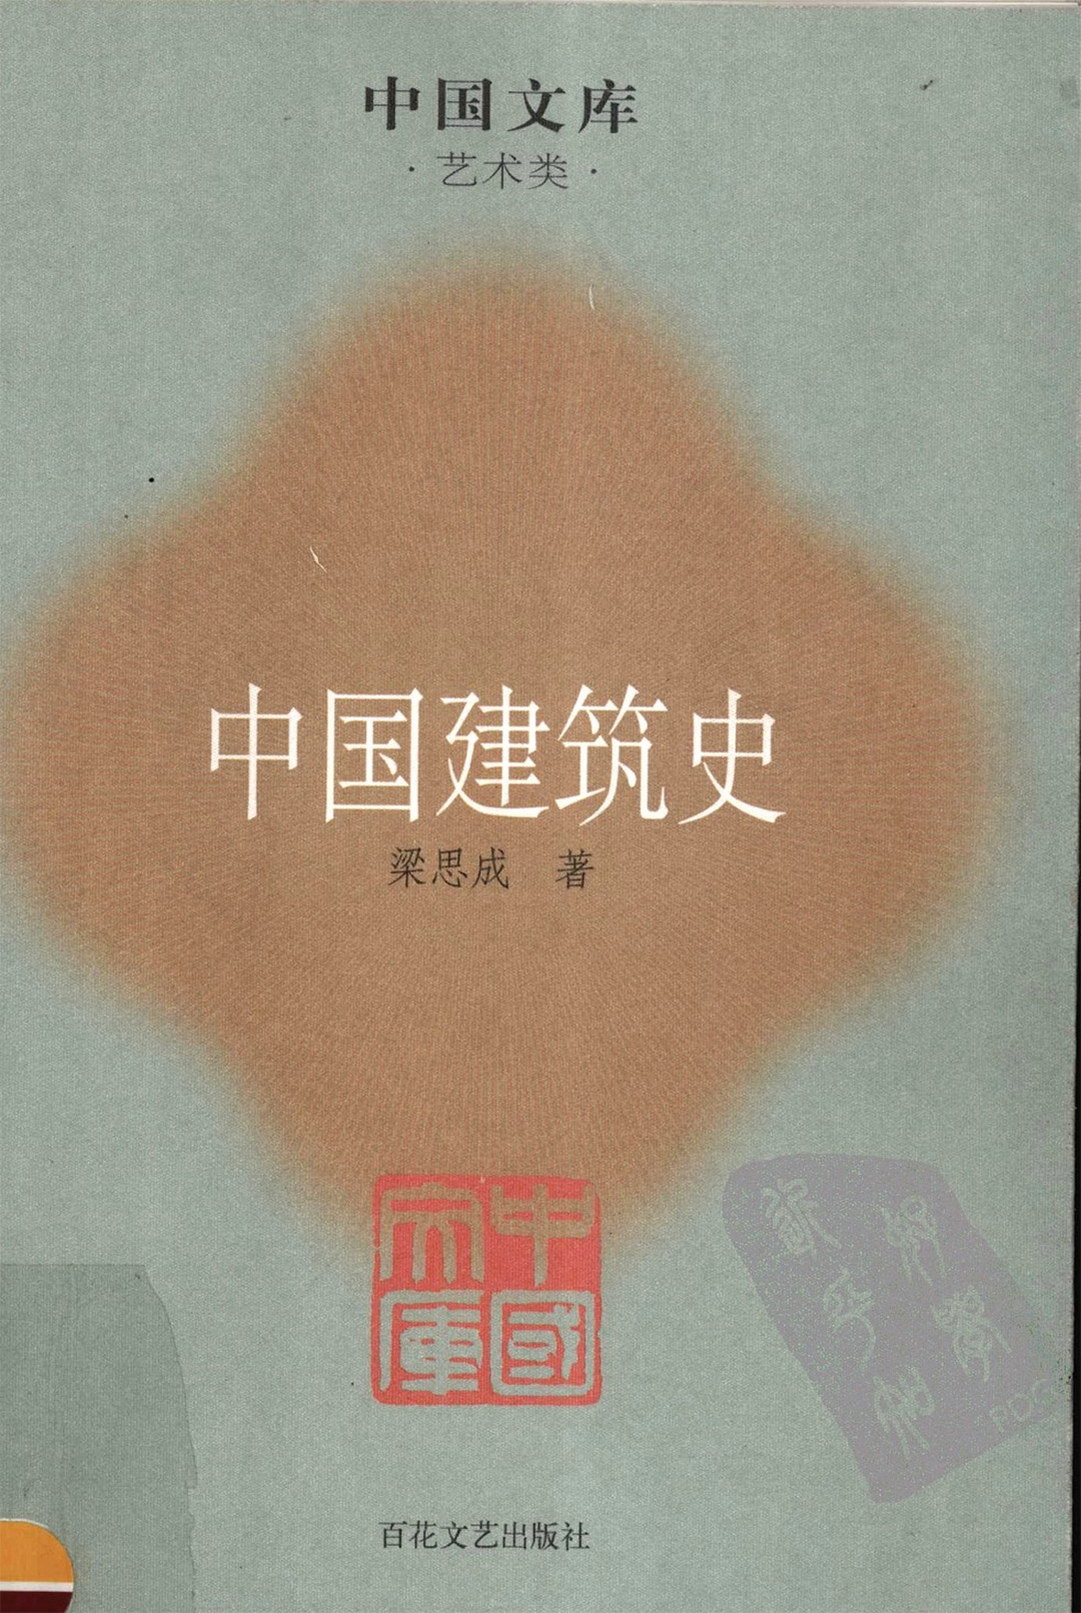 《梁思成书籍系列》建筑画、清式营造则例、中国建筑史